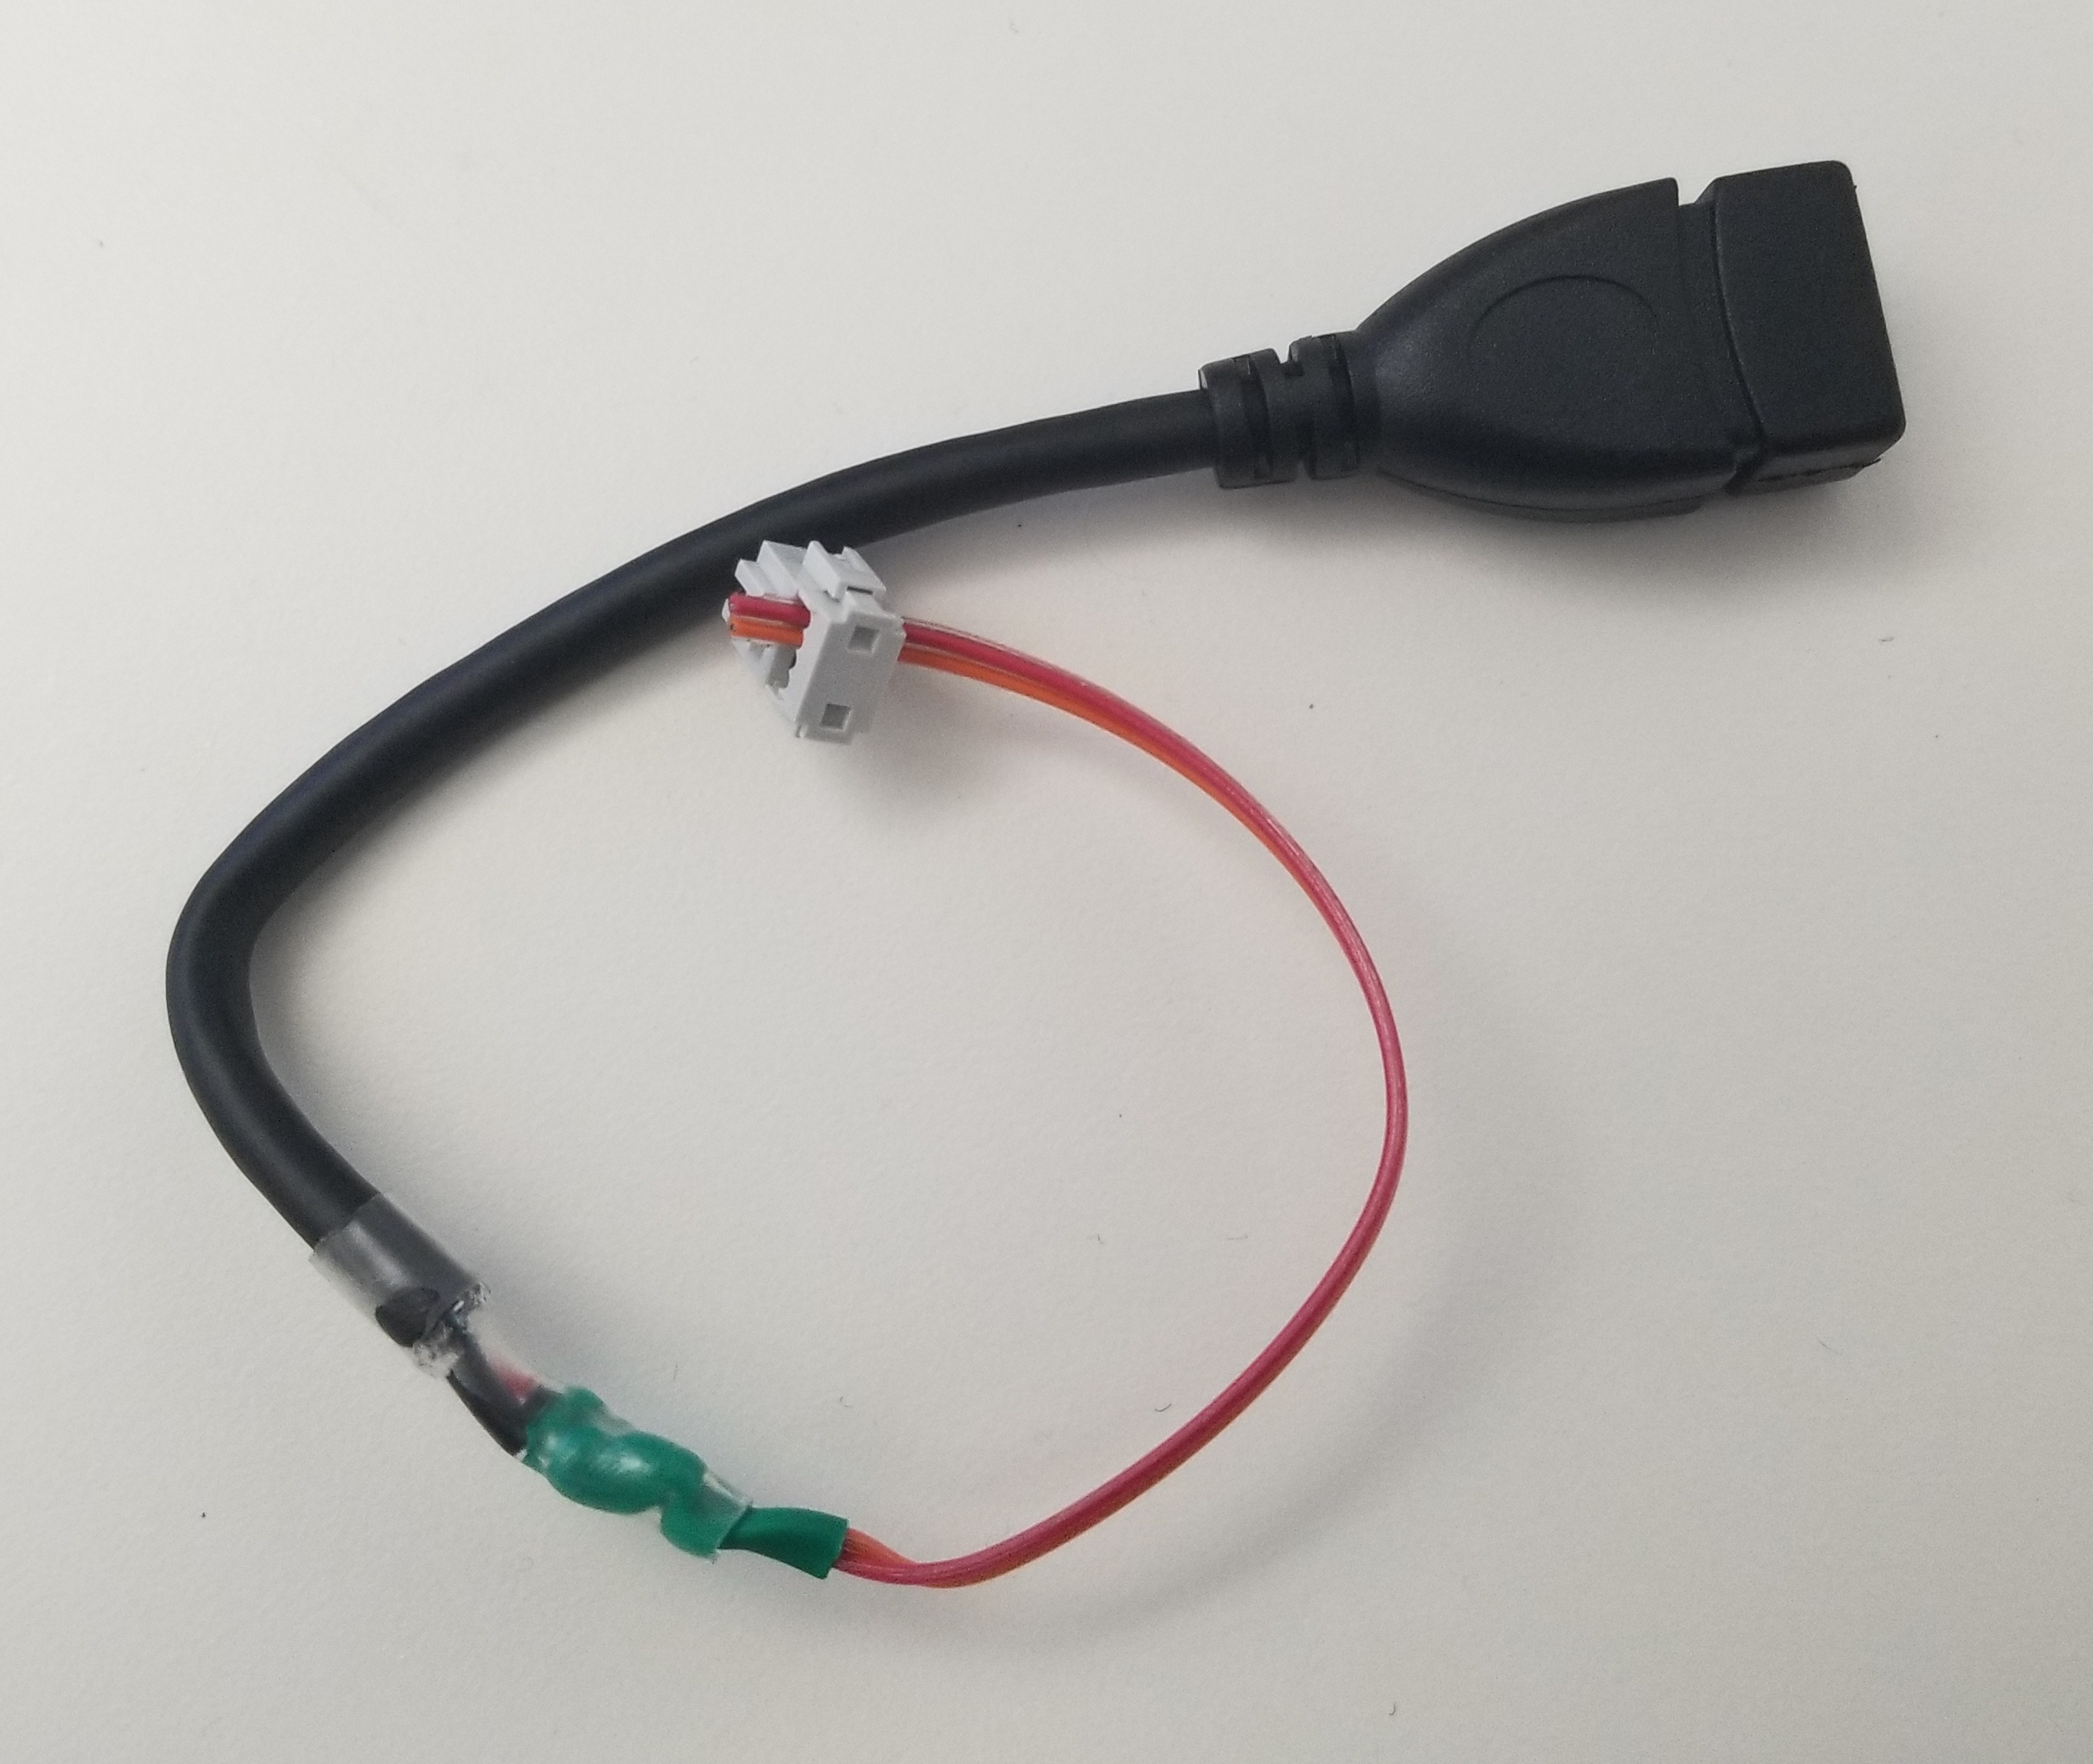 DIY USB power cord